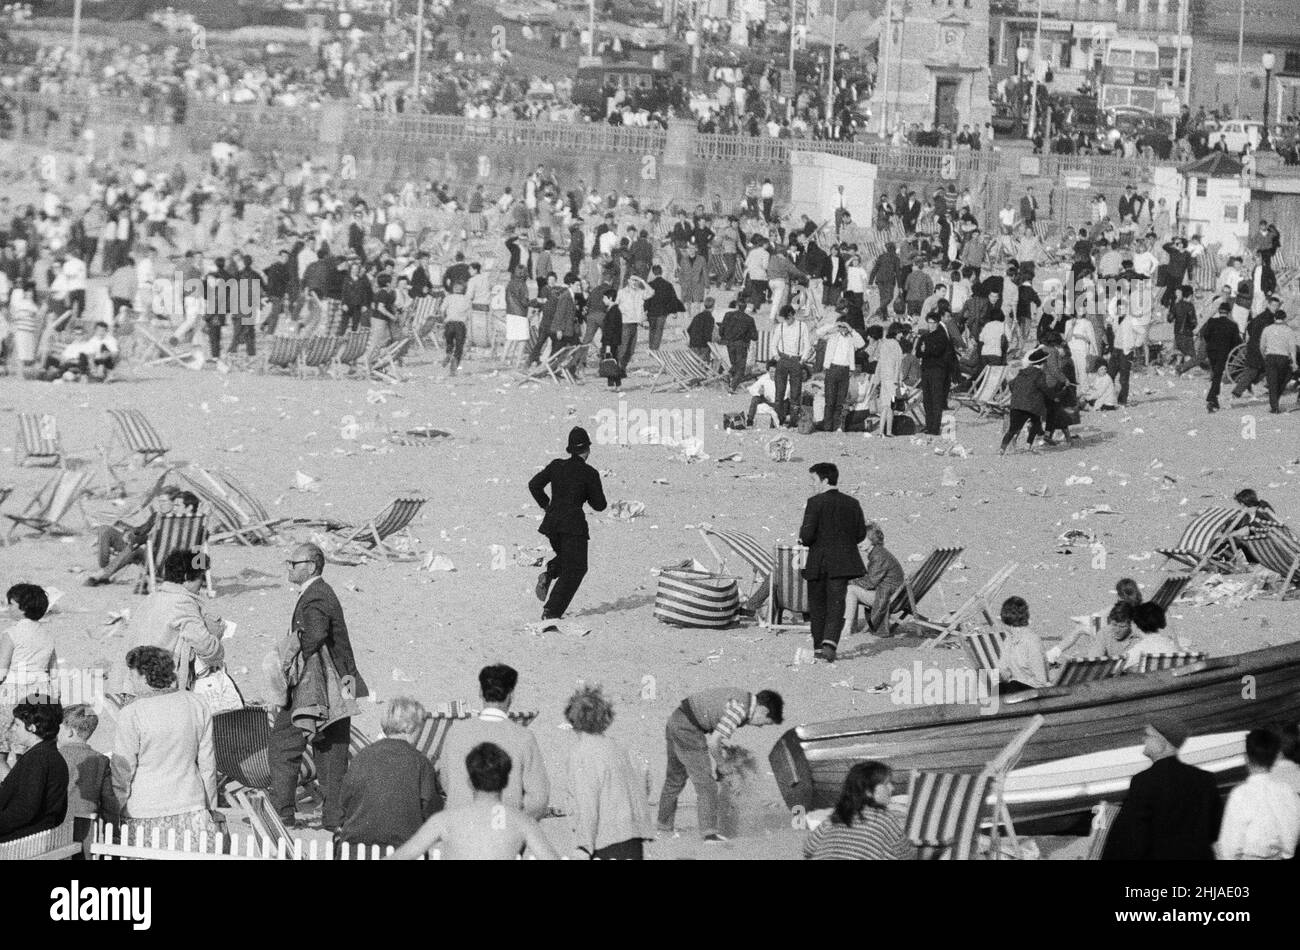 Mods gegen Rockers. Bild zeigt die Szene in Margate, North East Kent im Mai 1964. Die Polizei läuft rüber zu den Mods und Rockers, um zu versuchen, die Unruhestifter zu beruhigen. Bild aufgenommen am 17th. Mai 1964 Stockfoto